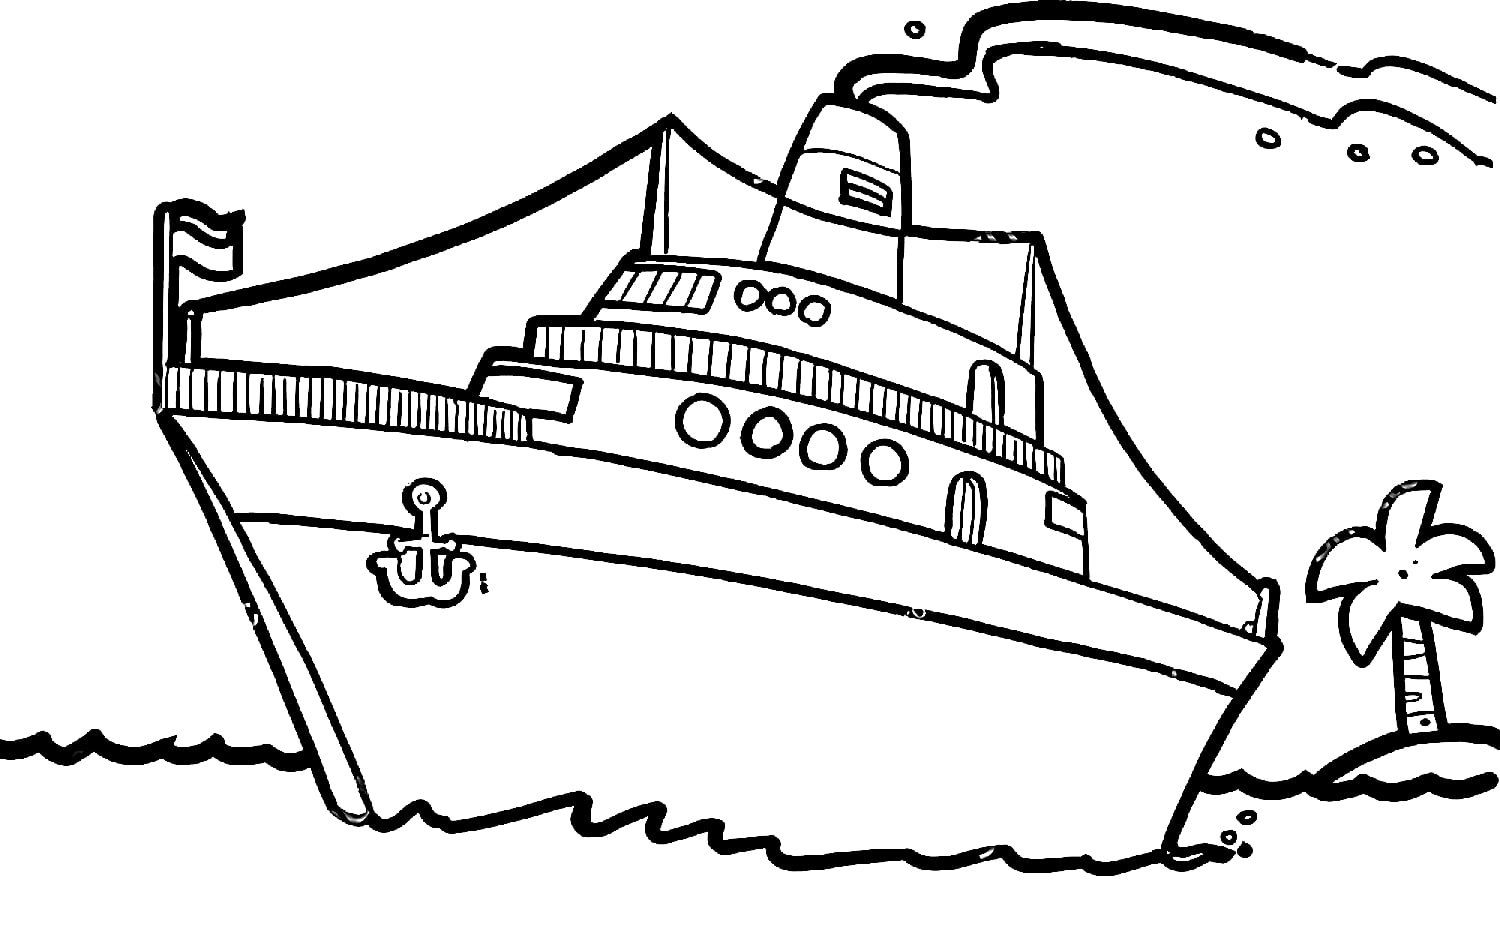 BÉ HỌA SĨ - Thực hành tập vẽ 244: Vẽ tàu biển - YouTube